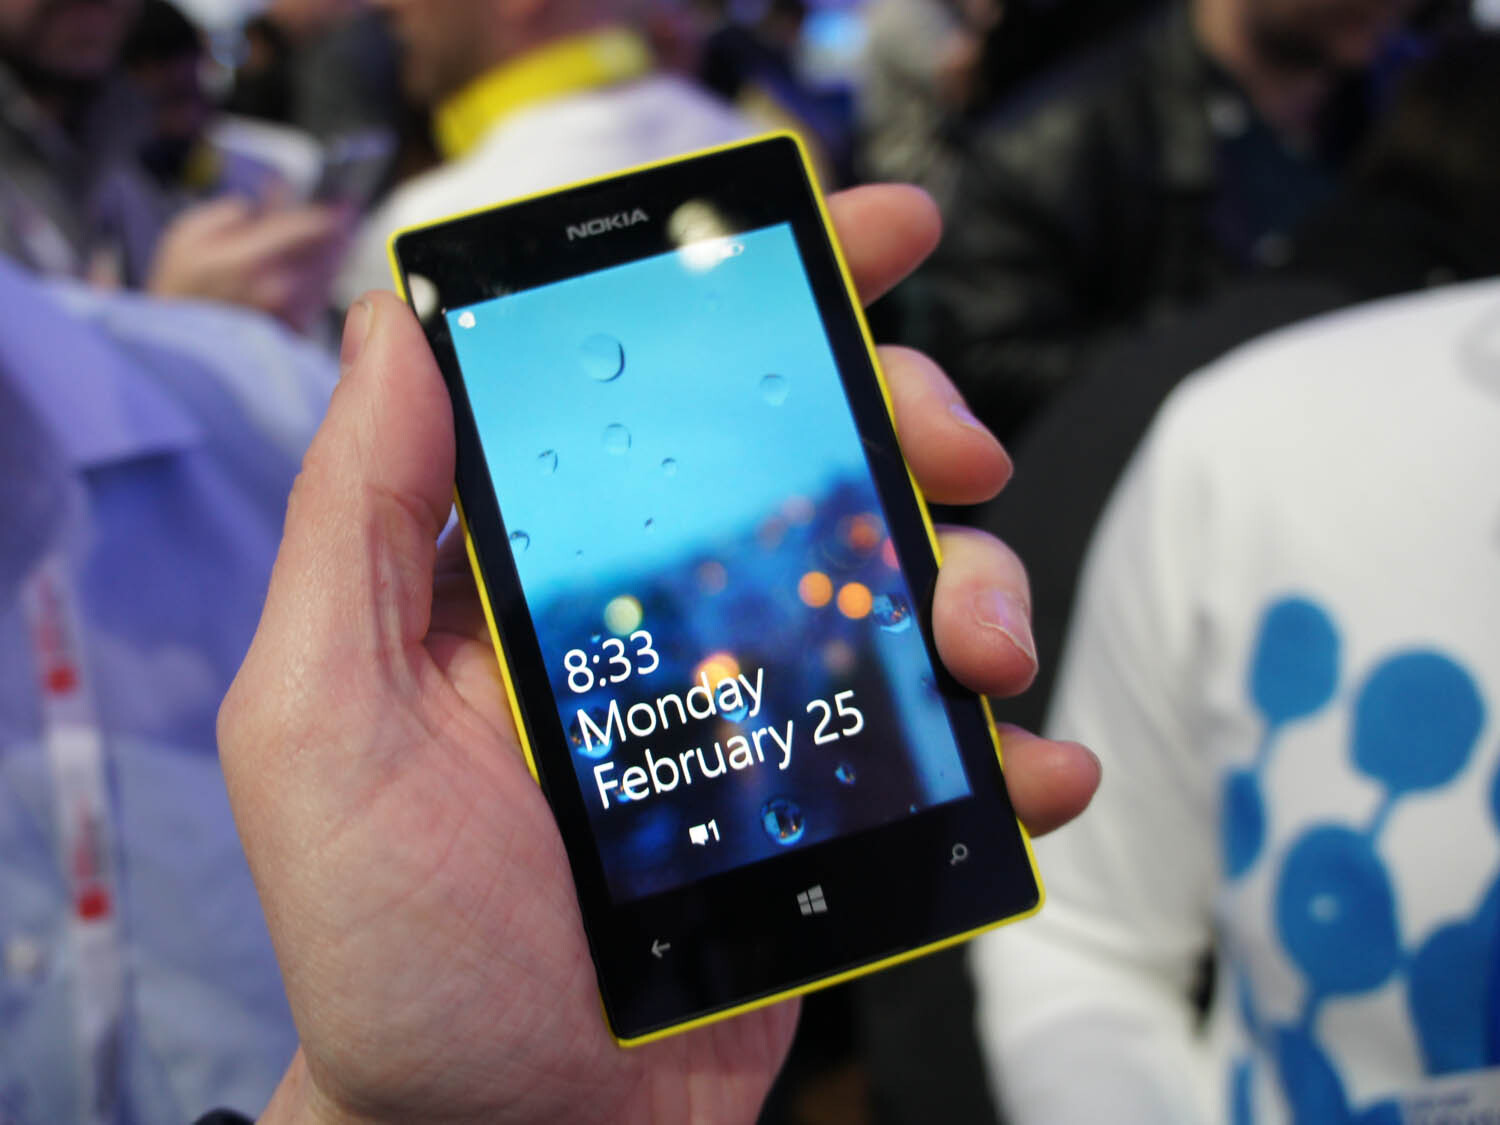 Những tính năng mới trên Lumia 730 có thực sự gây ấn tượng với người dùng?  - Fptshop.com.vn